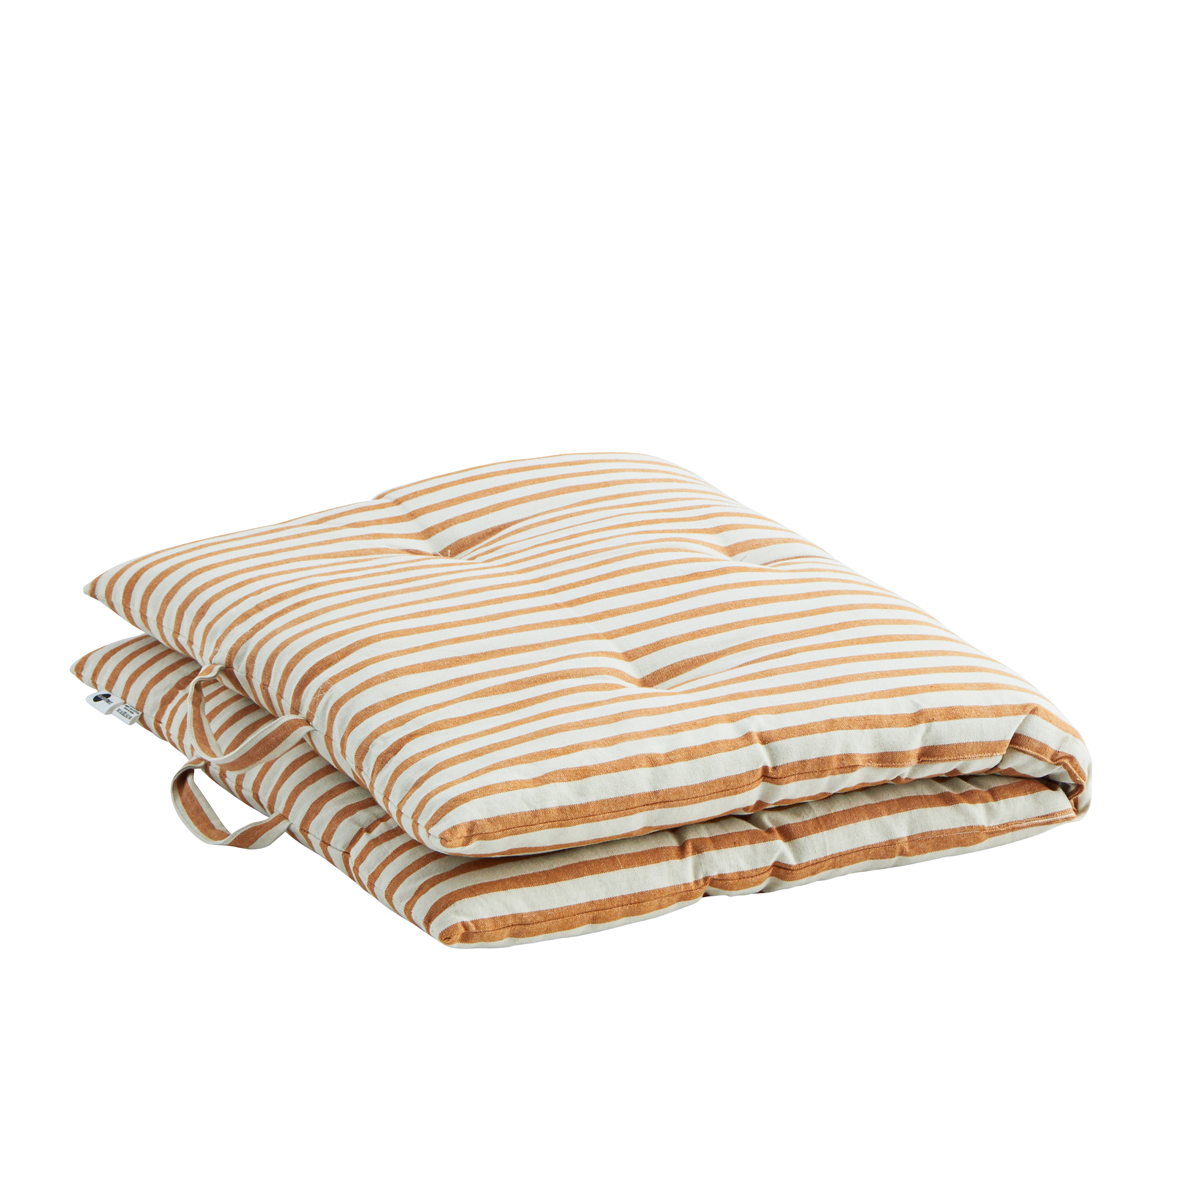 Striped Cotton Mattress Dark Honey 60cm x 100cm